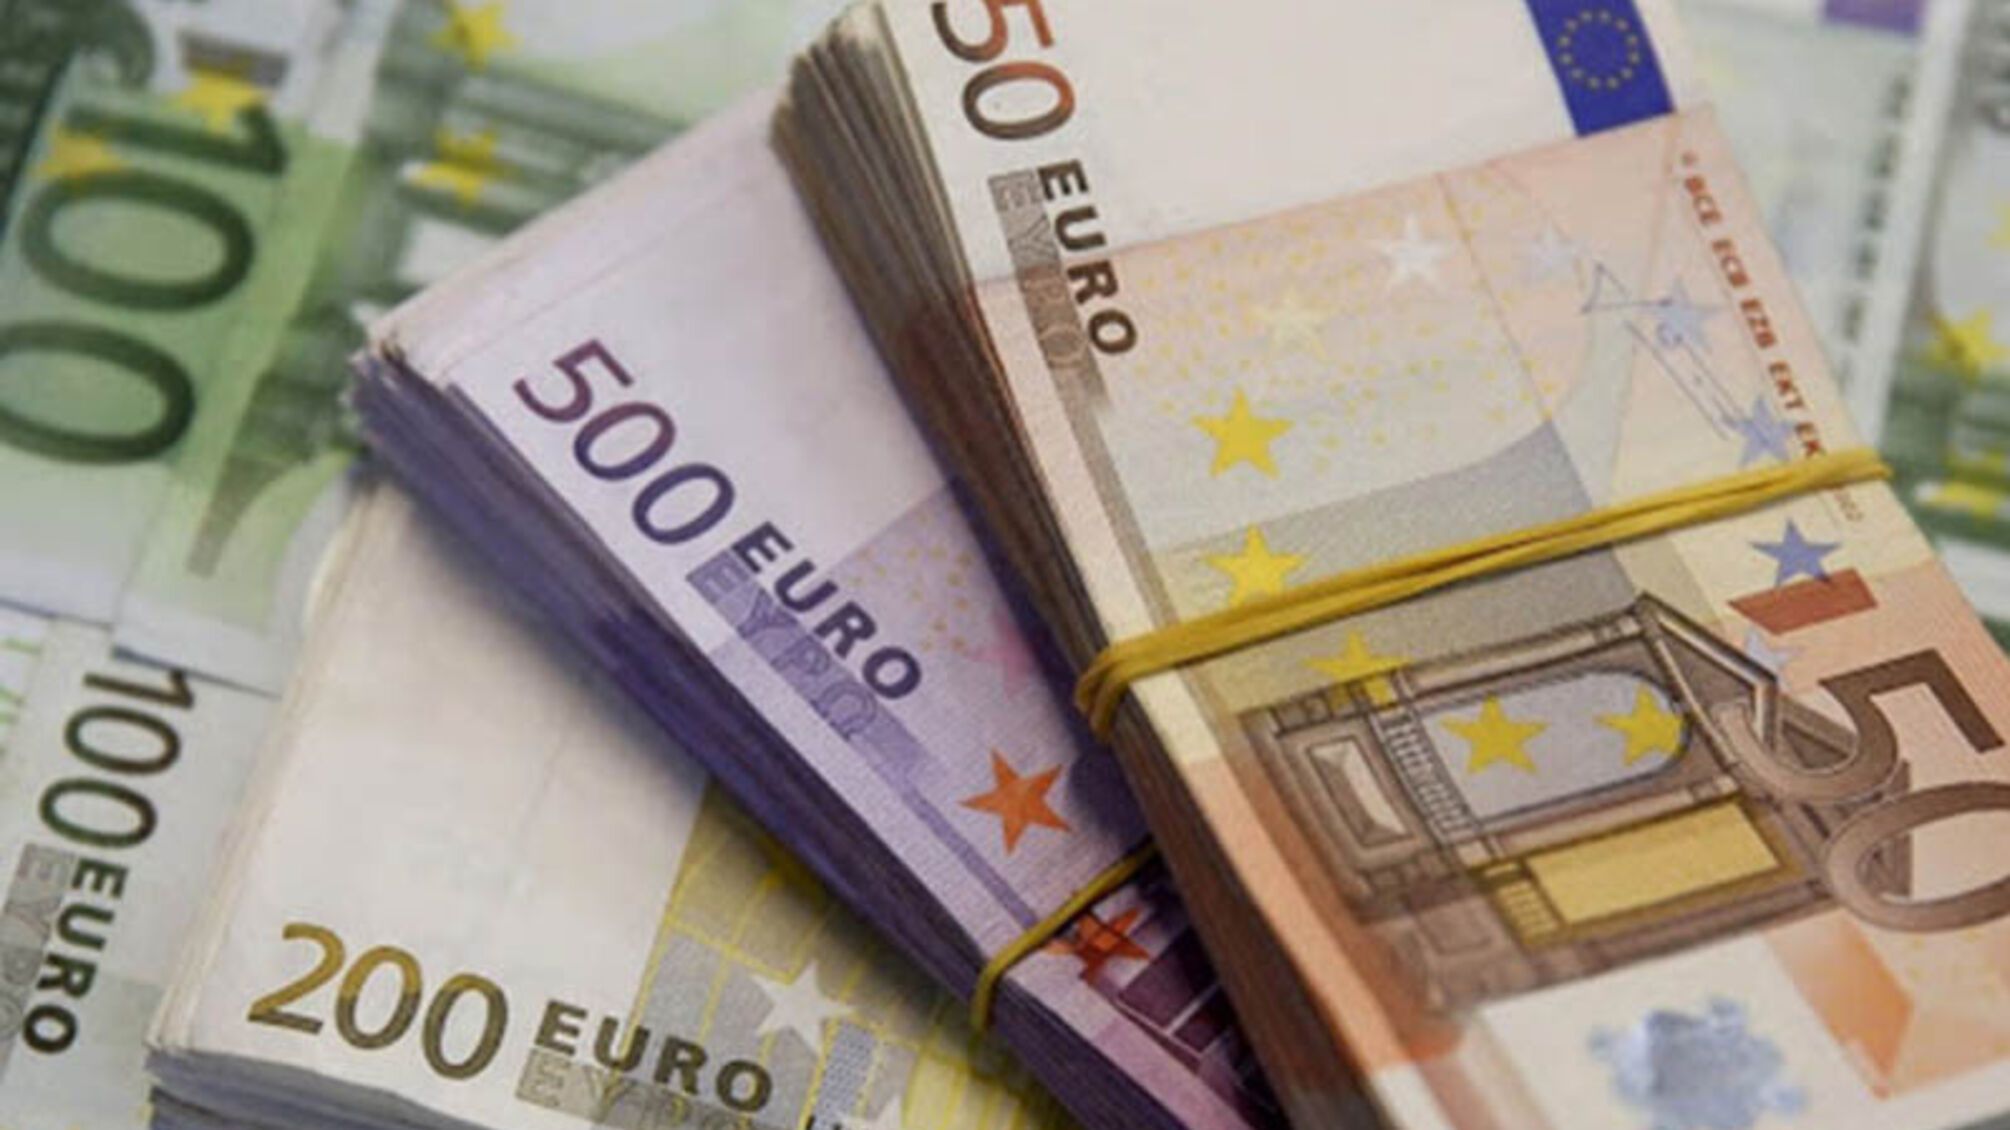 Німецький уряд анонсувала фінансову підтримку Україні 1 млрд євро грантової підтримки